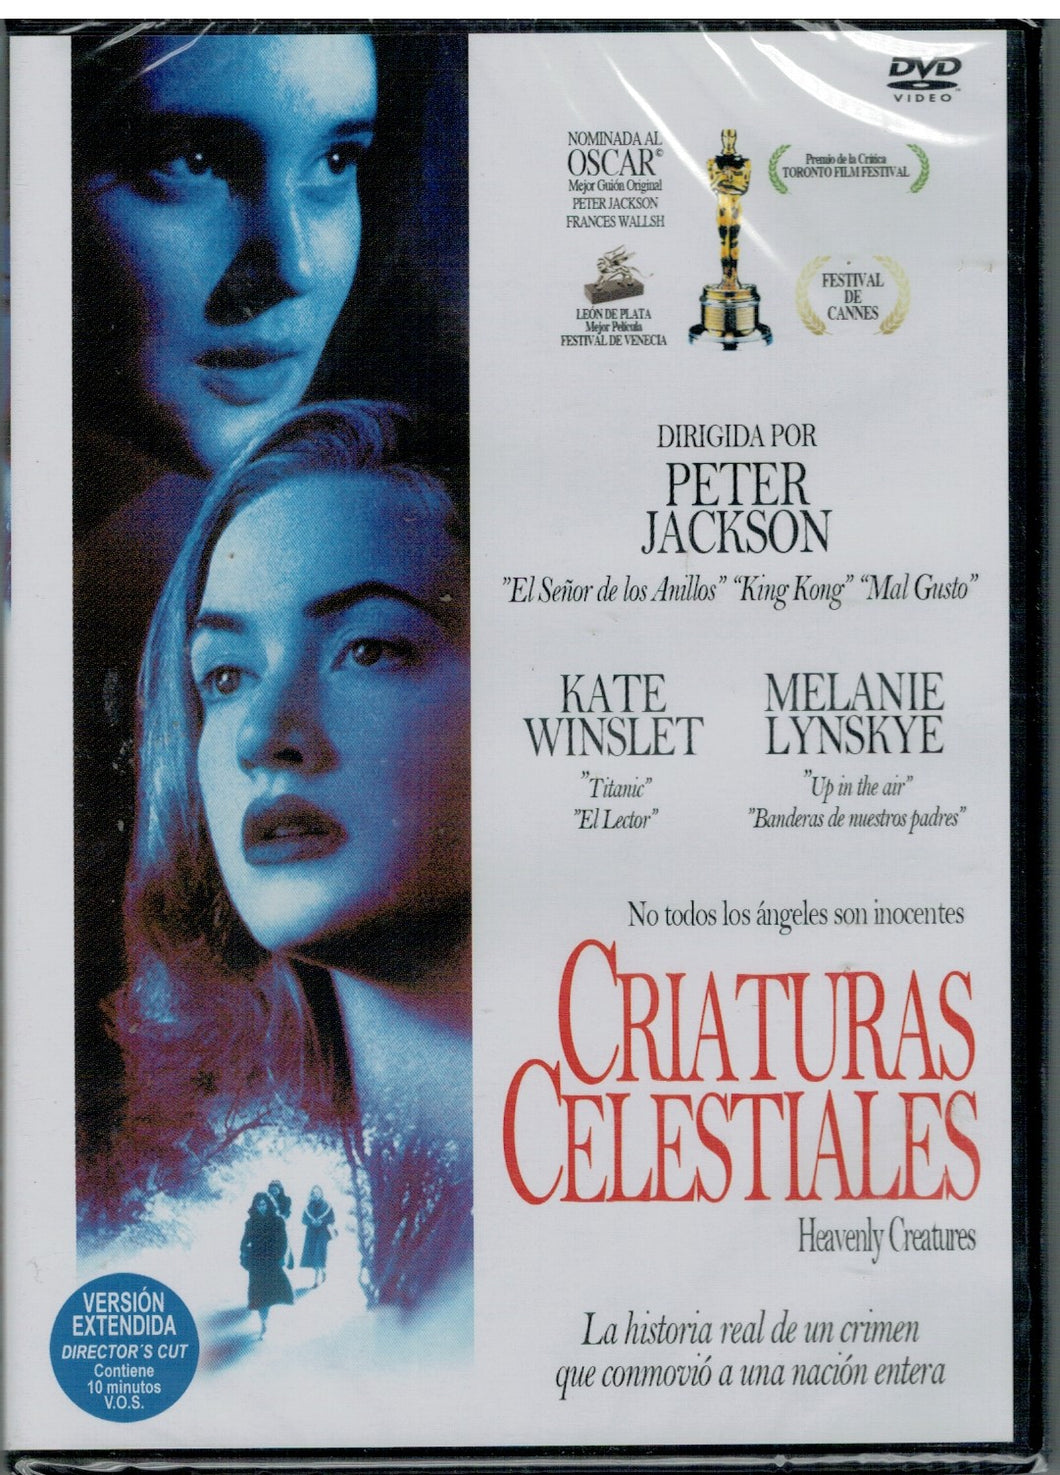 Criaturas celestiales (Heavenly Creatures) (DVD Nuevo)